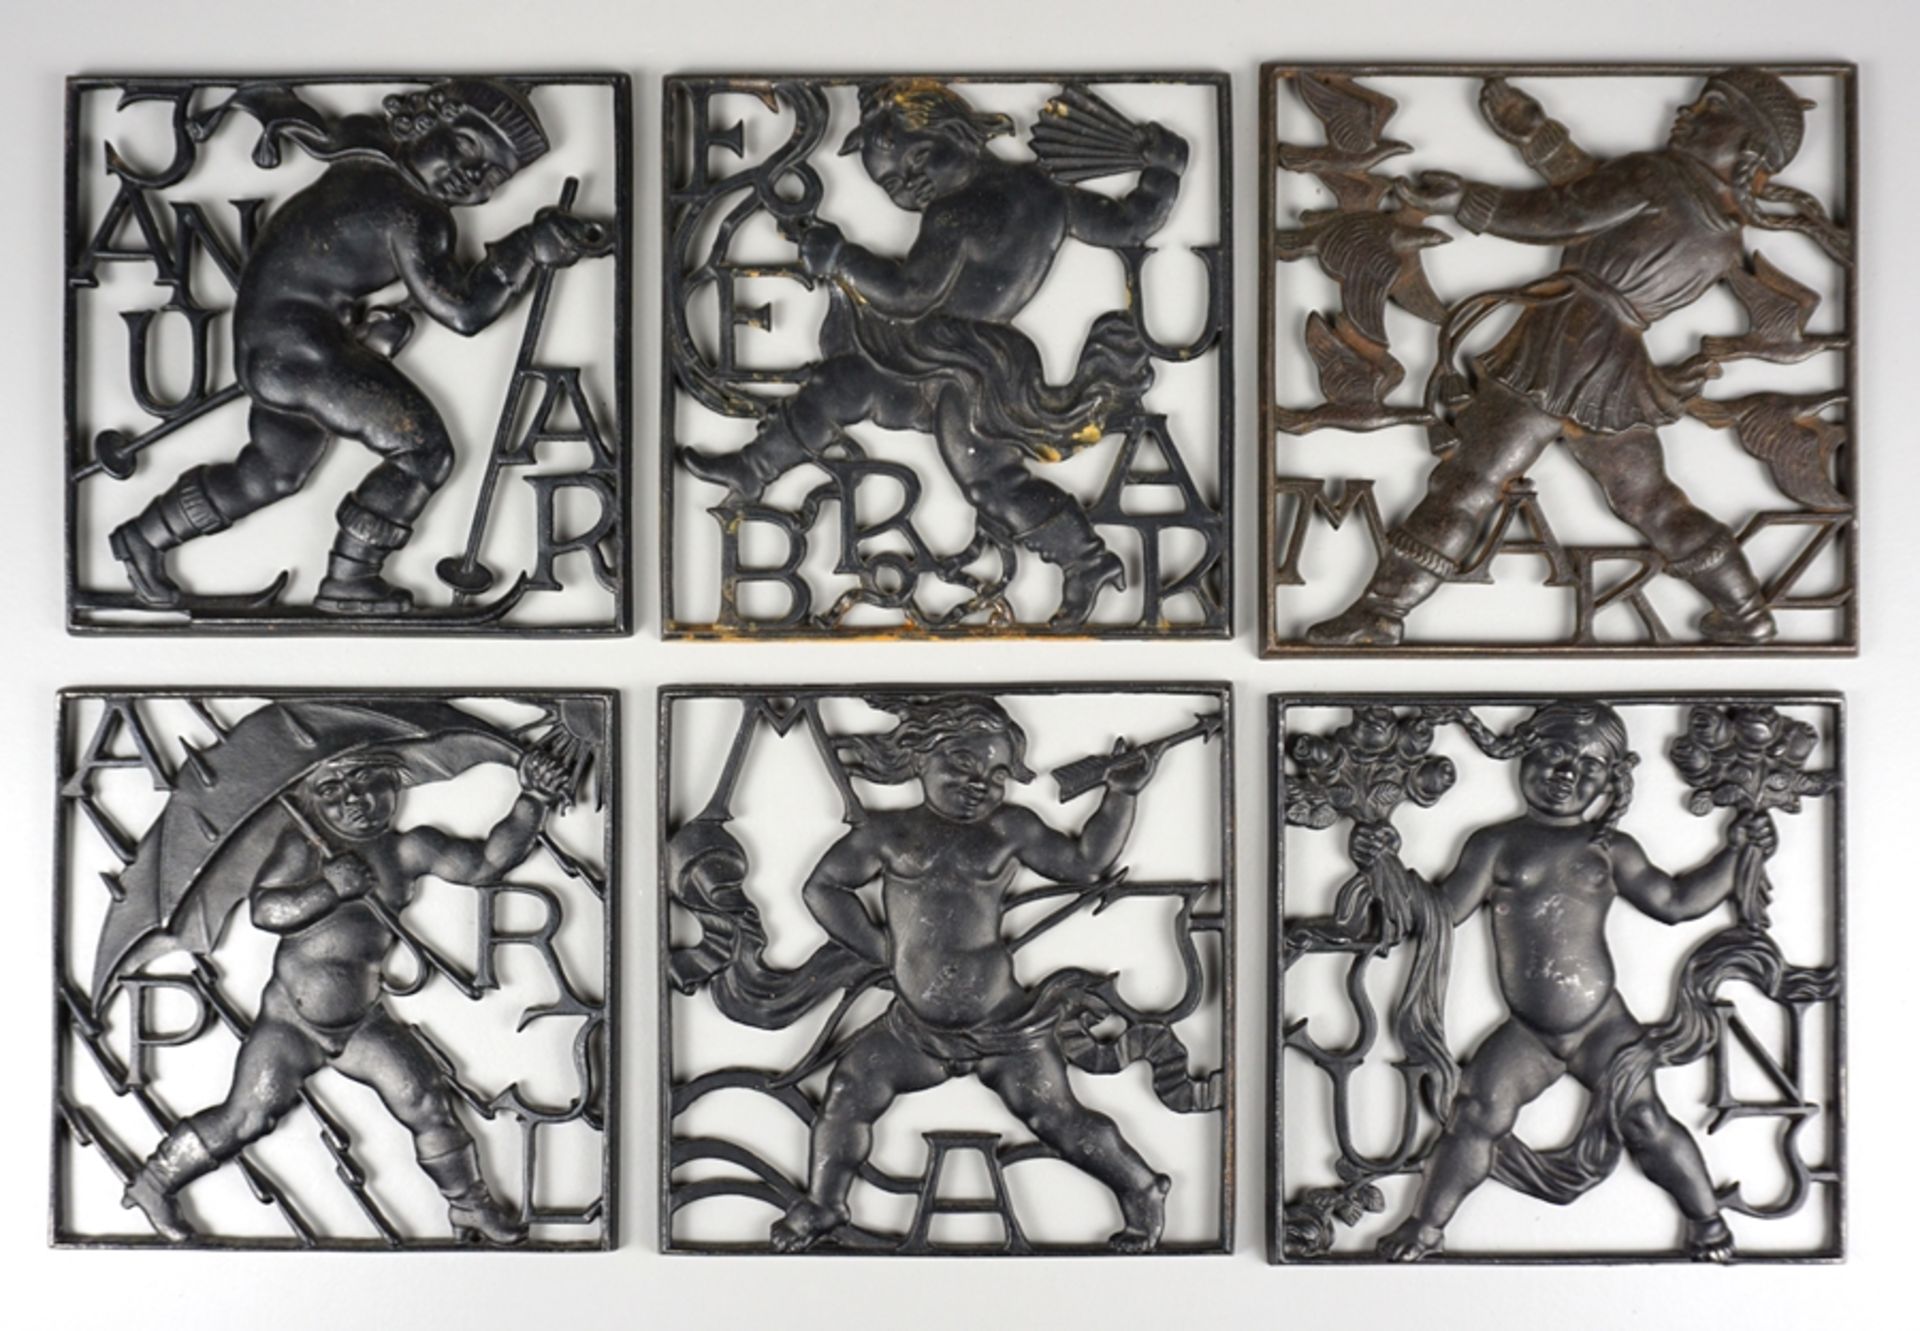 12 Reliefplatten aus der Reihe "Monatsmotive", vollständig von Januar bis Dezember, Paul Moll für L